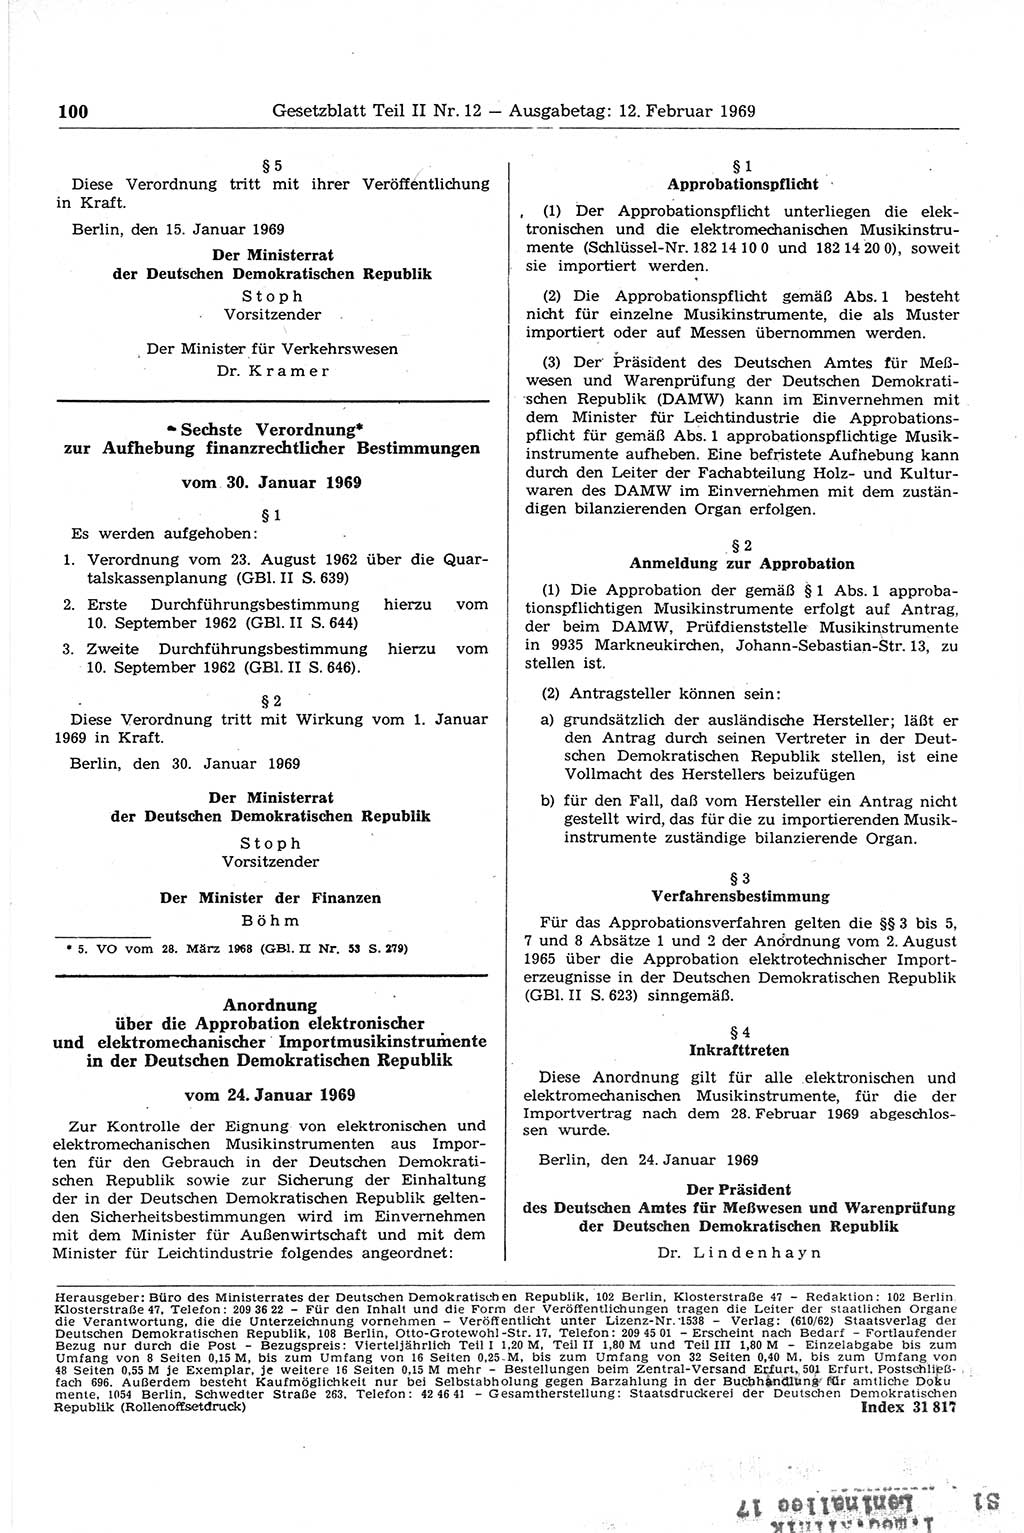 Gesetzblatt (GBl.) der Deutschen Demokratischen Republik (DDR) Teil ⅠⅠ 1969, Seite 100 (GBl. DDR ⅠⅠ 1969, S. 100)